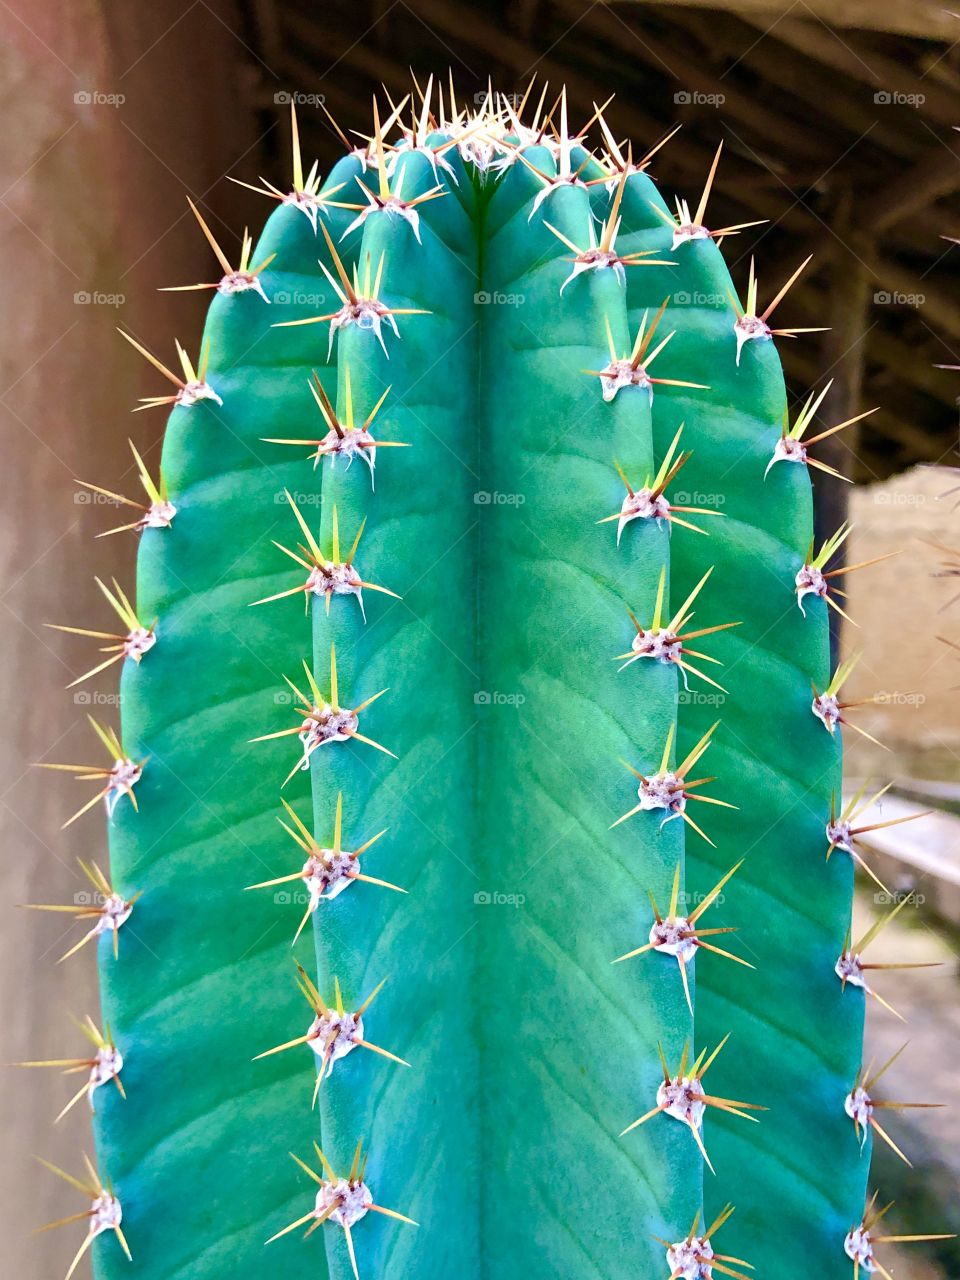 True portrait mode cactus 